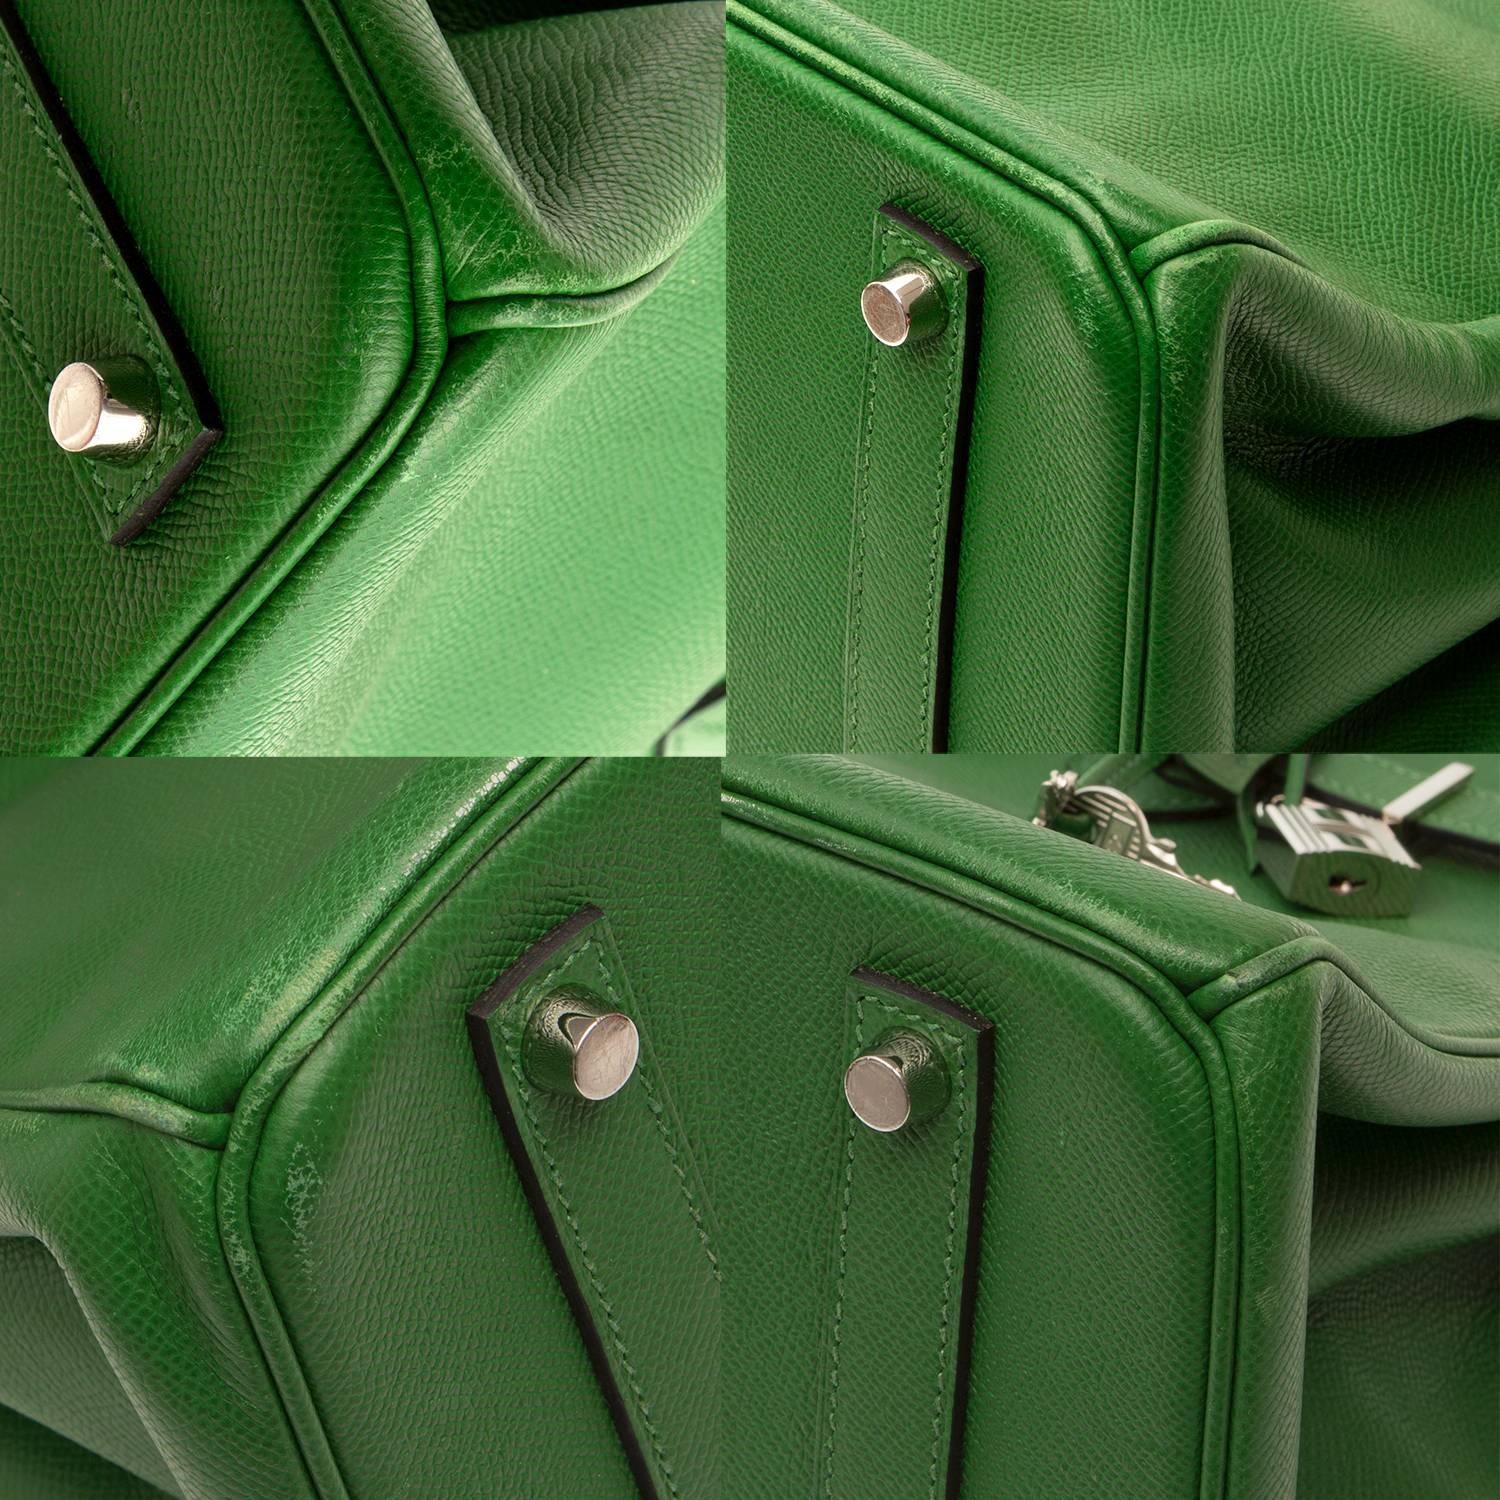 Hermes Birkin Green Bag 3